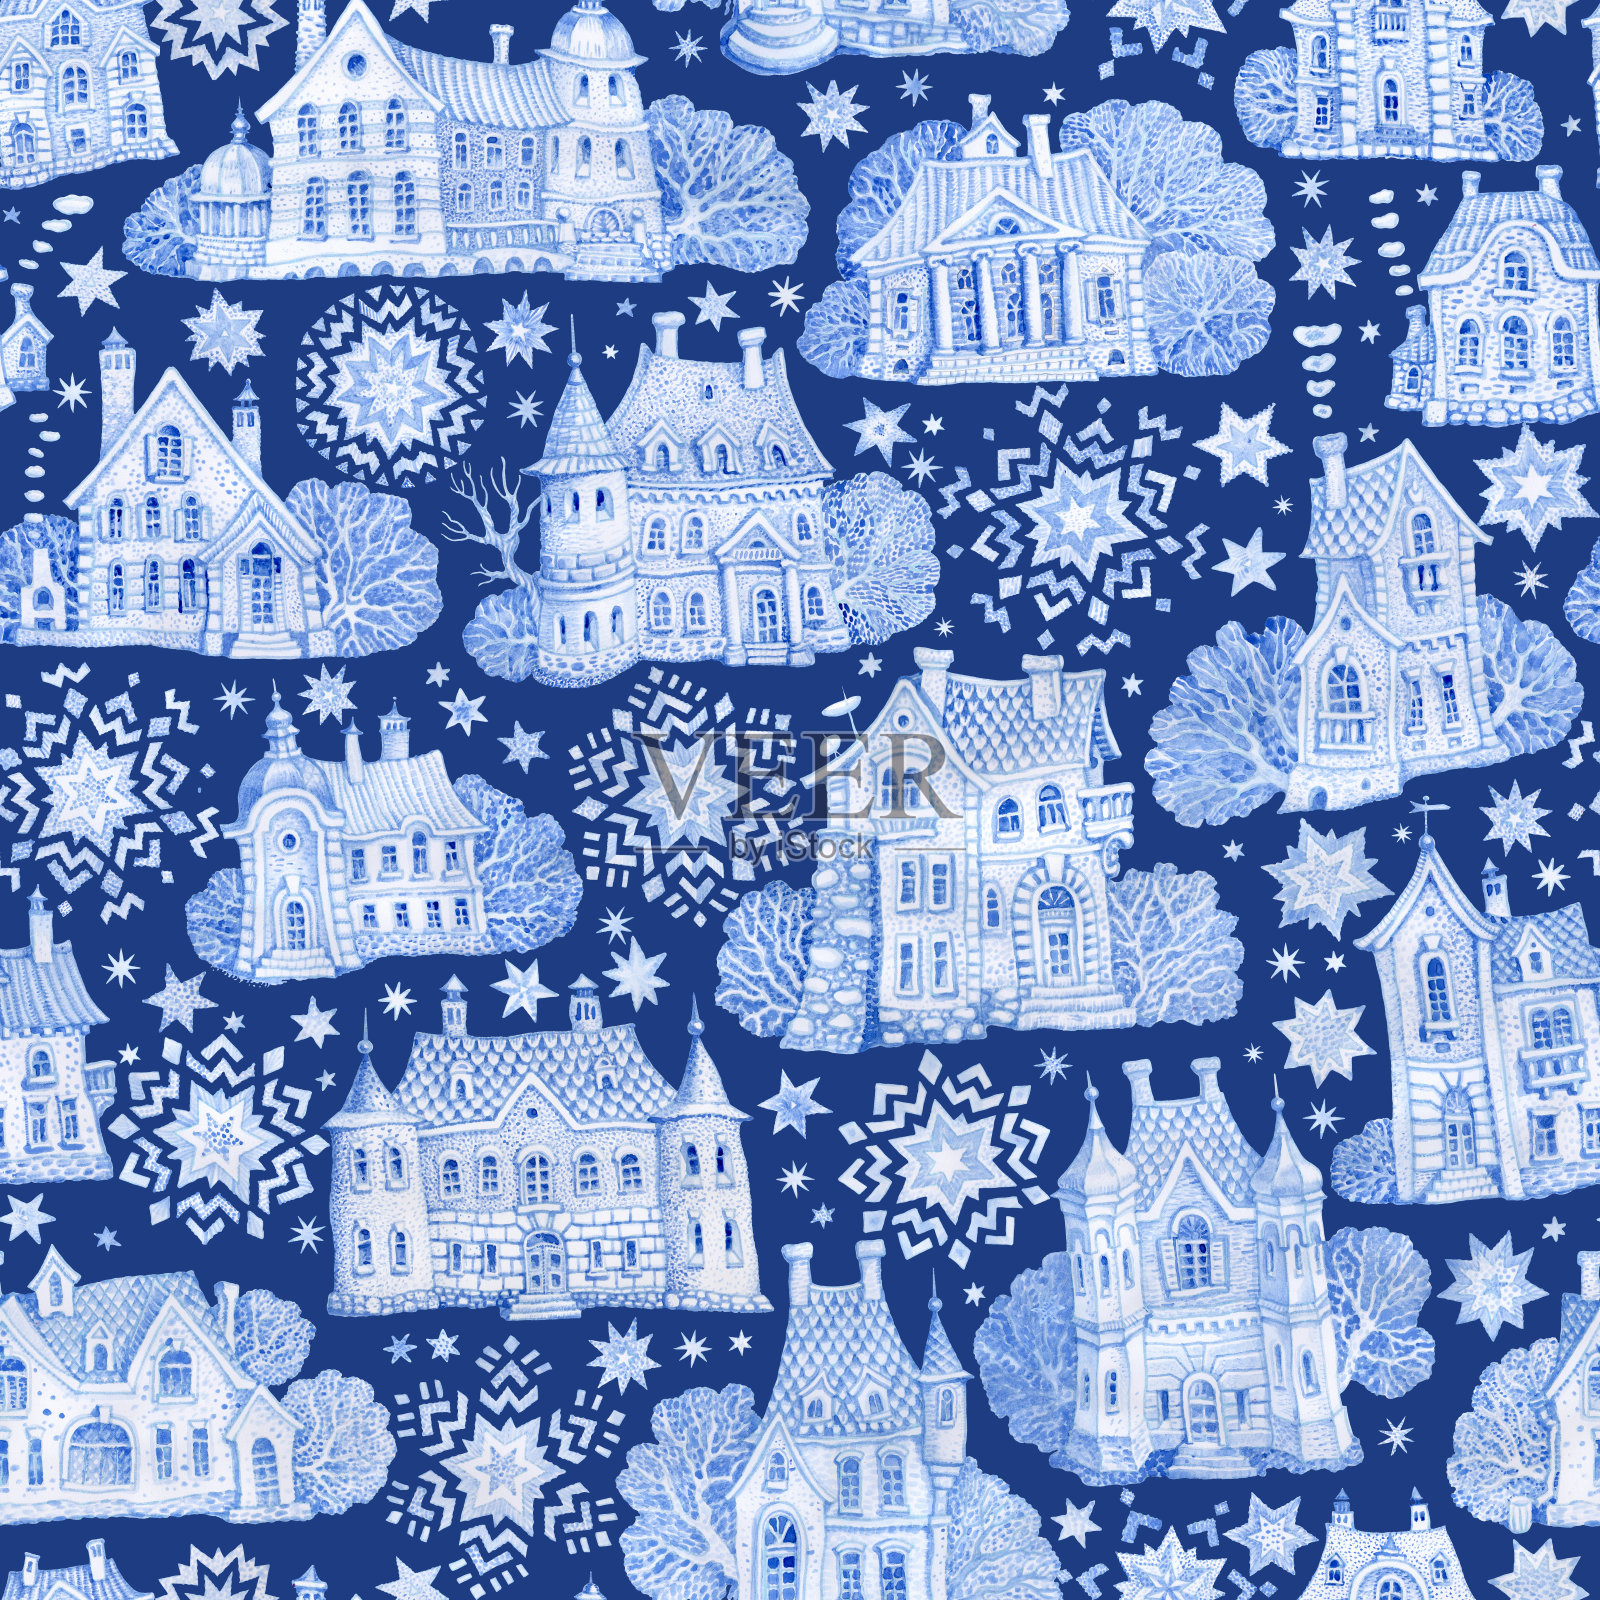 无缝图案的幻想建筑与圣诞星和雪花。手绘的蓝色水彩童话老城房子孤立在一个深蓝色的背景。冬季景观墙纸、包装纸插画图片素材